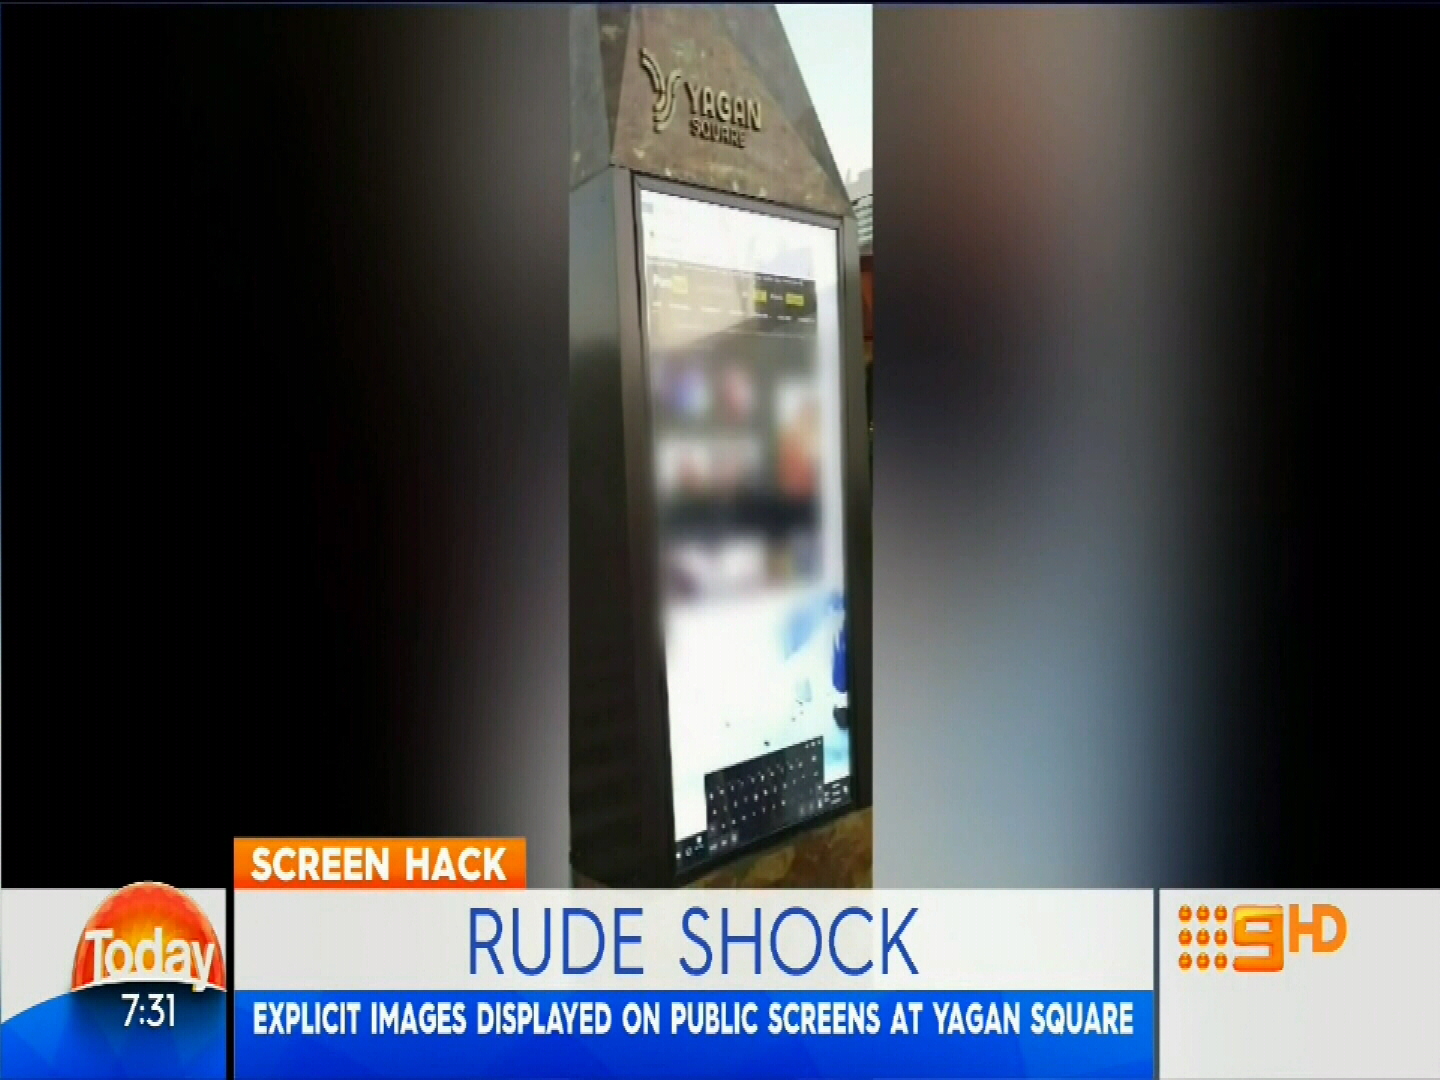 Hackin - Porn broadcast in public in Perth's Yagan Square